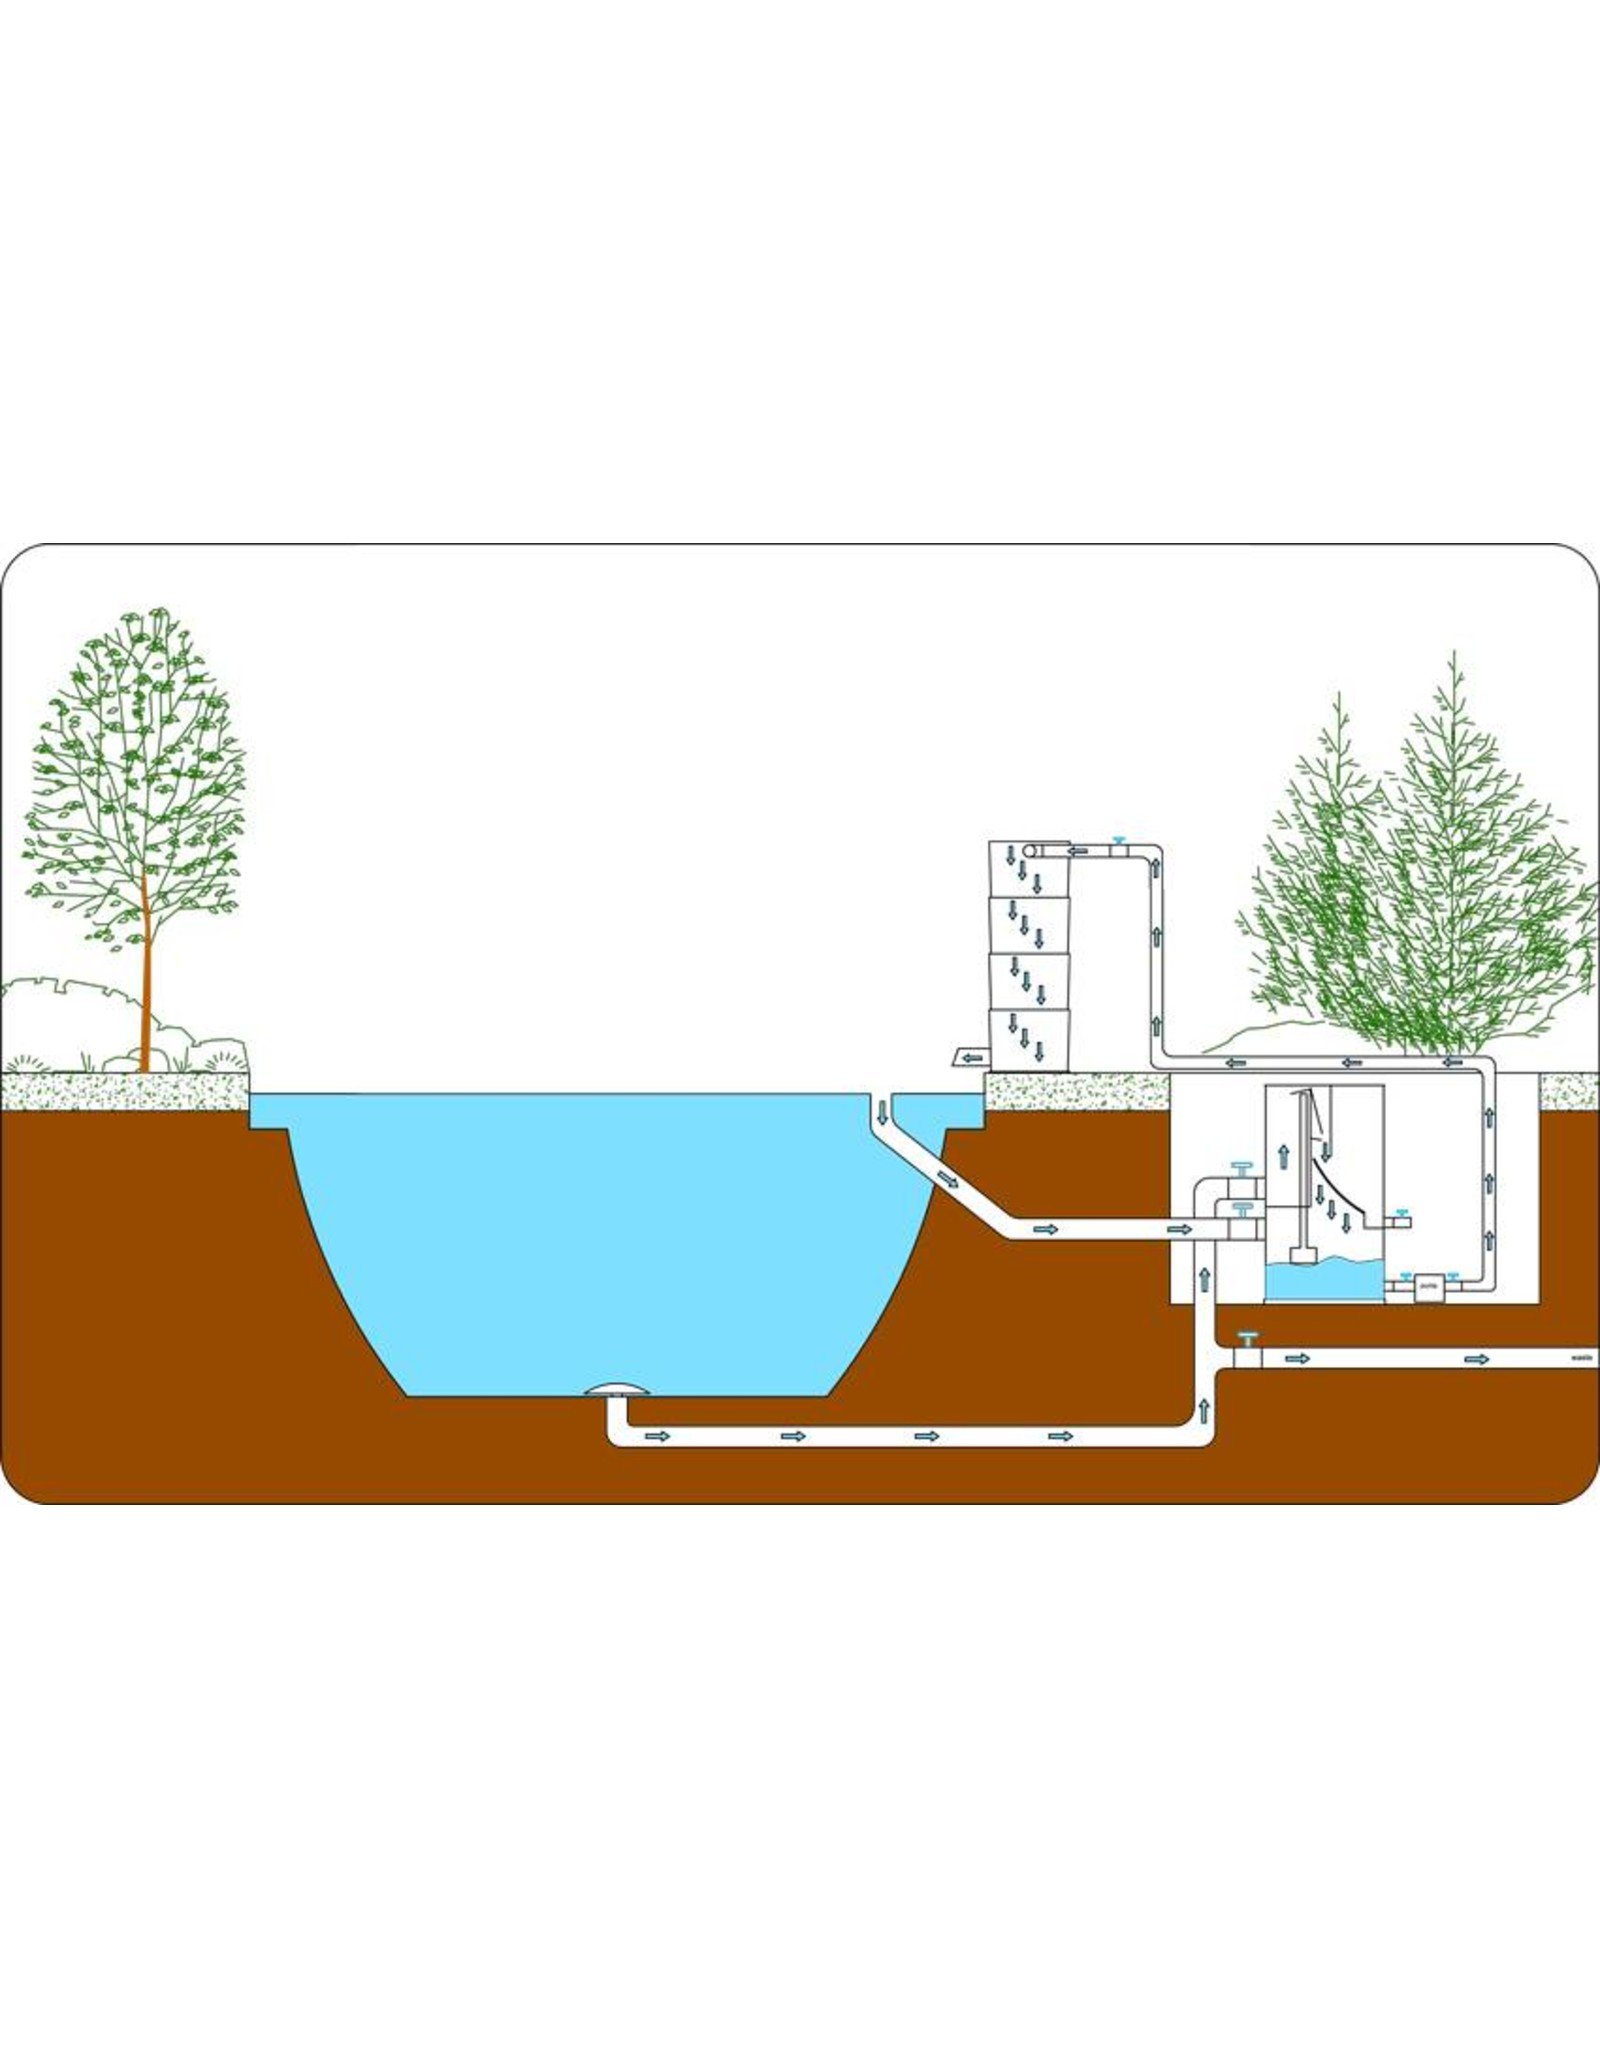 Пруд очистка воды. Схема биофильтра для пруда. Система фильтрации пруда схема. Схема фильтрации воды в УЗВ. Фильтры для очистки искусственного водоема.